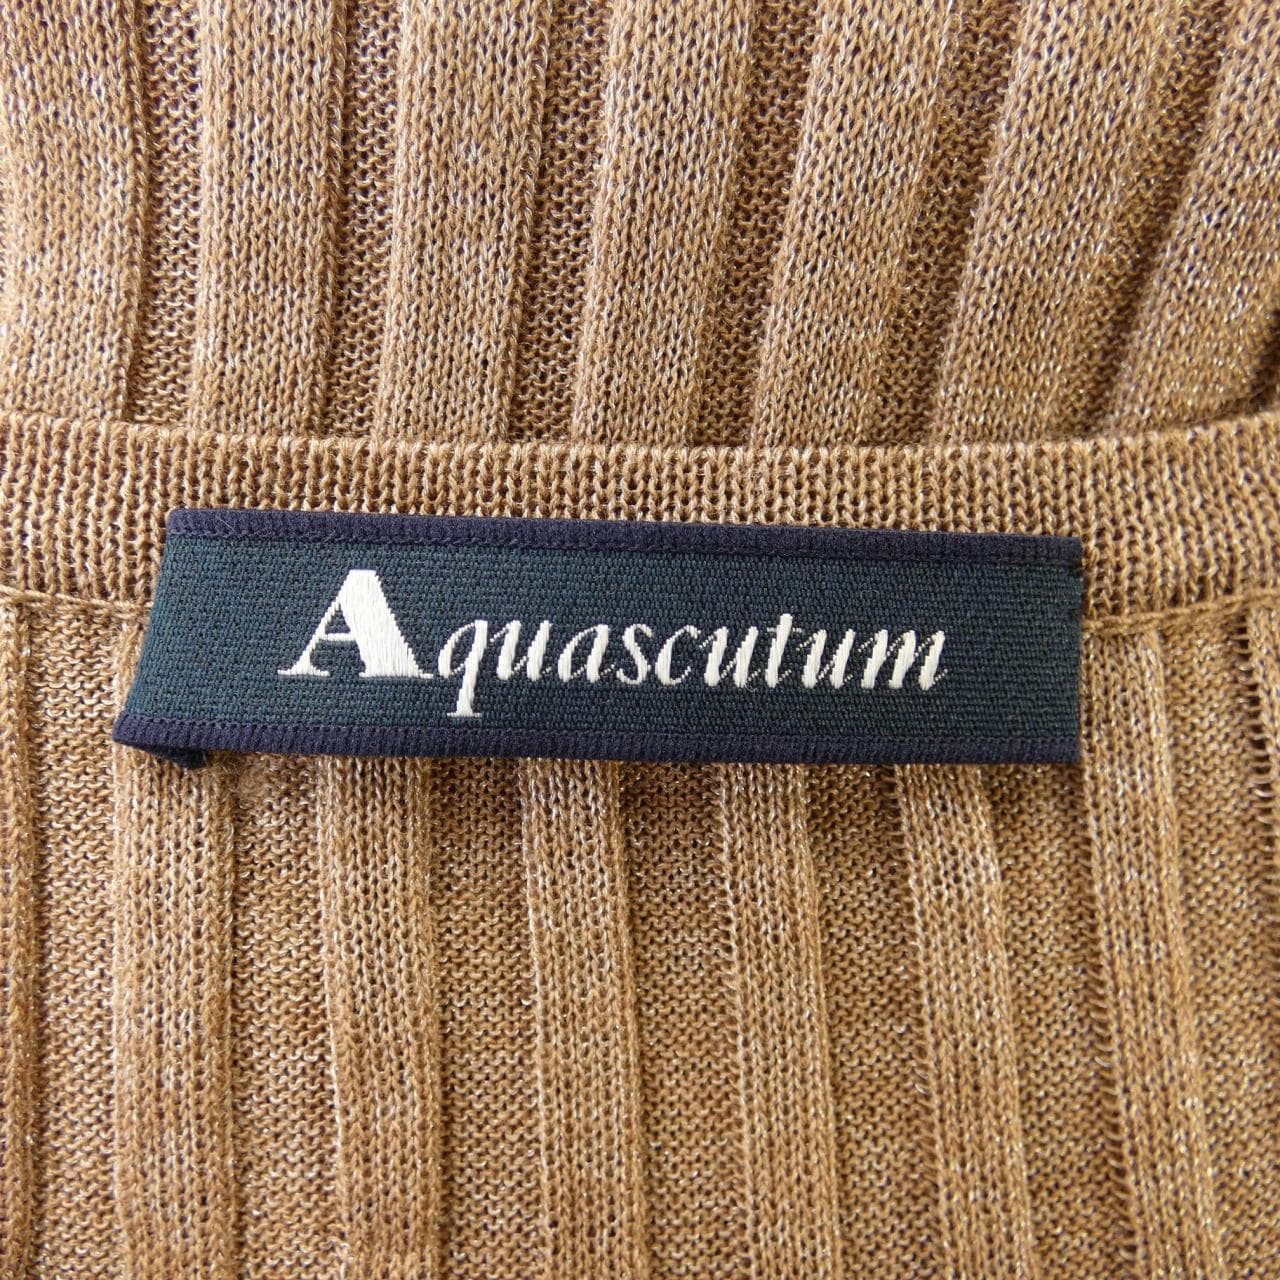 Aquascutum Aquascutum Top